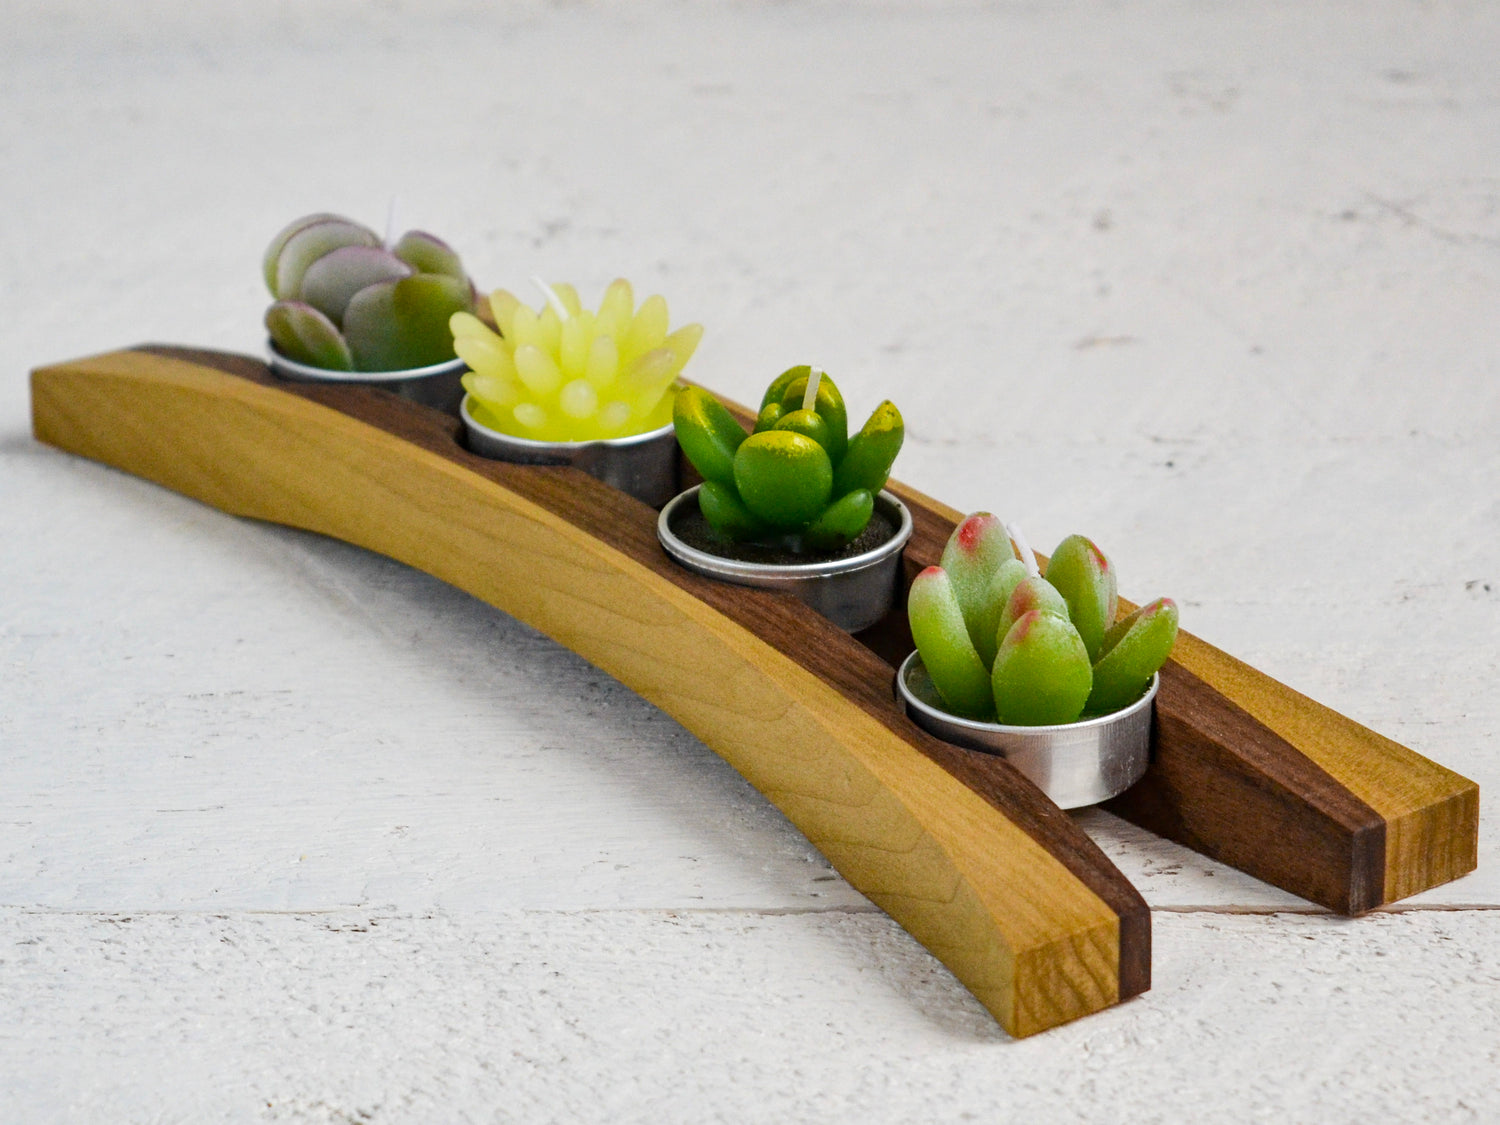 green succulent tea candles in wooden cradle